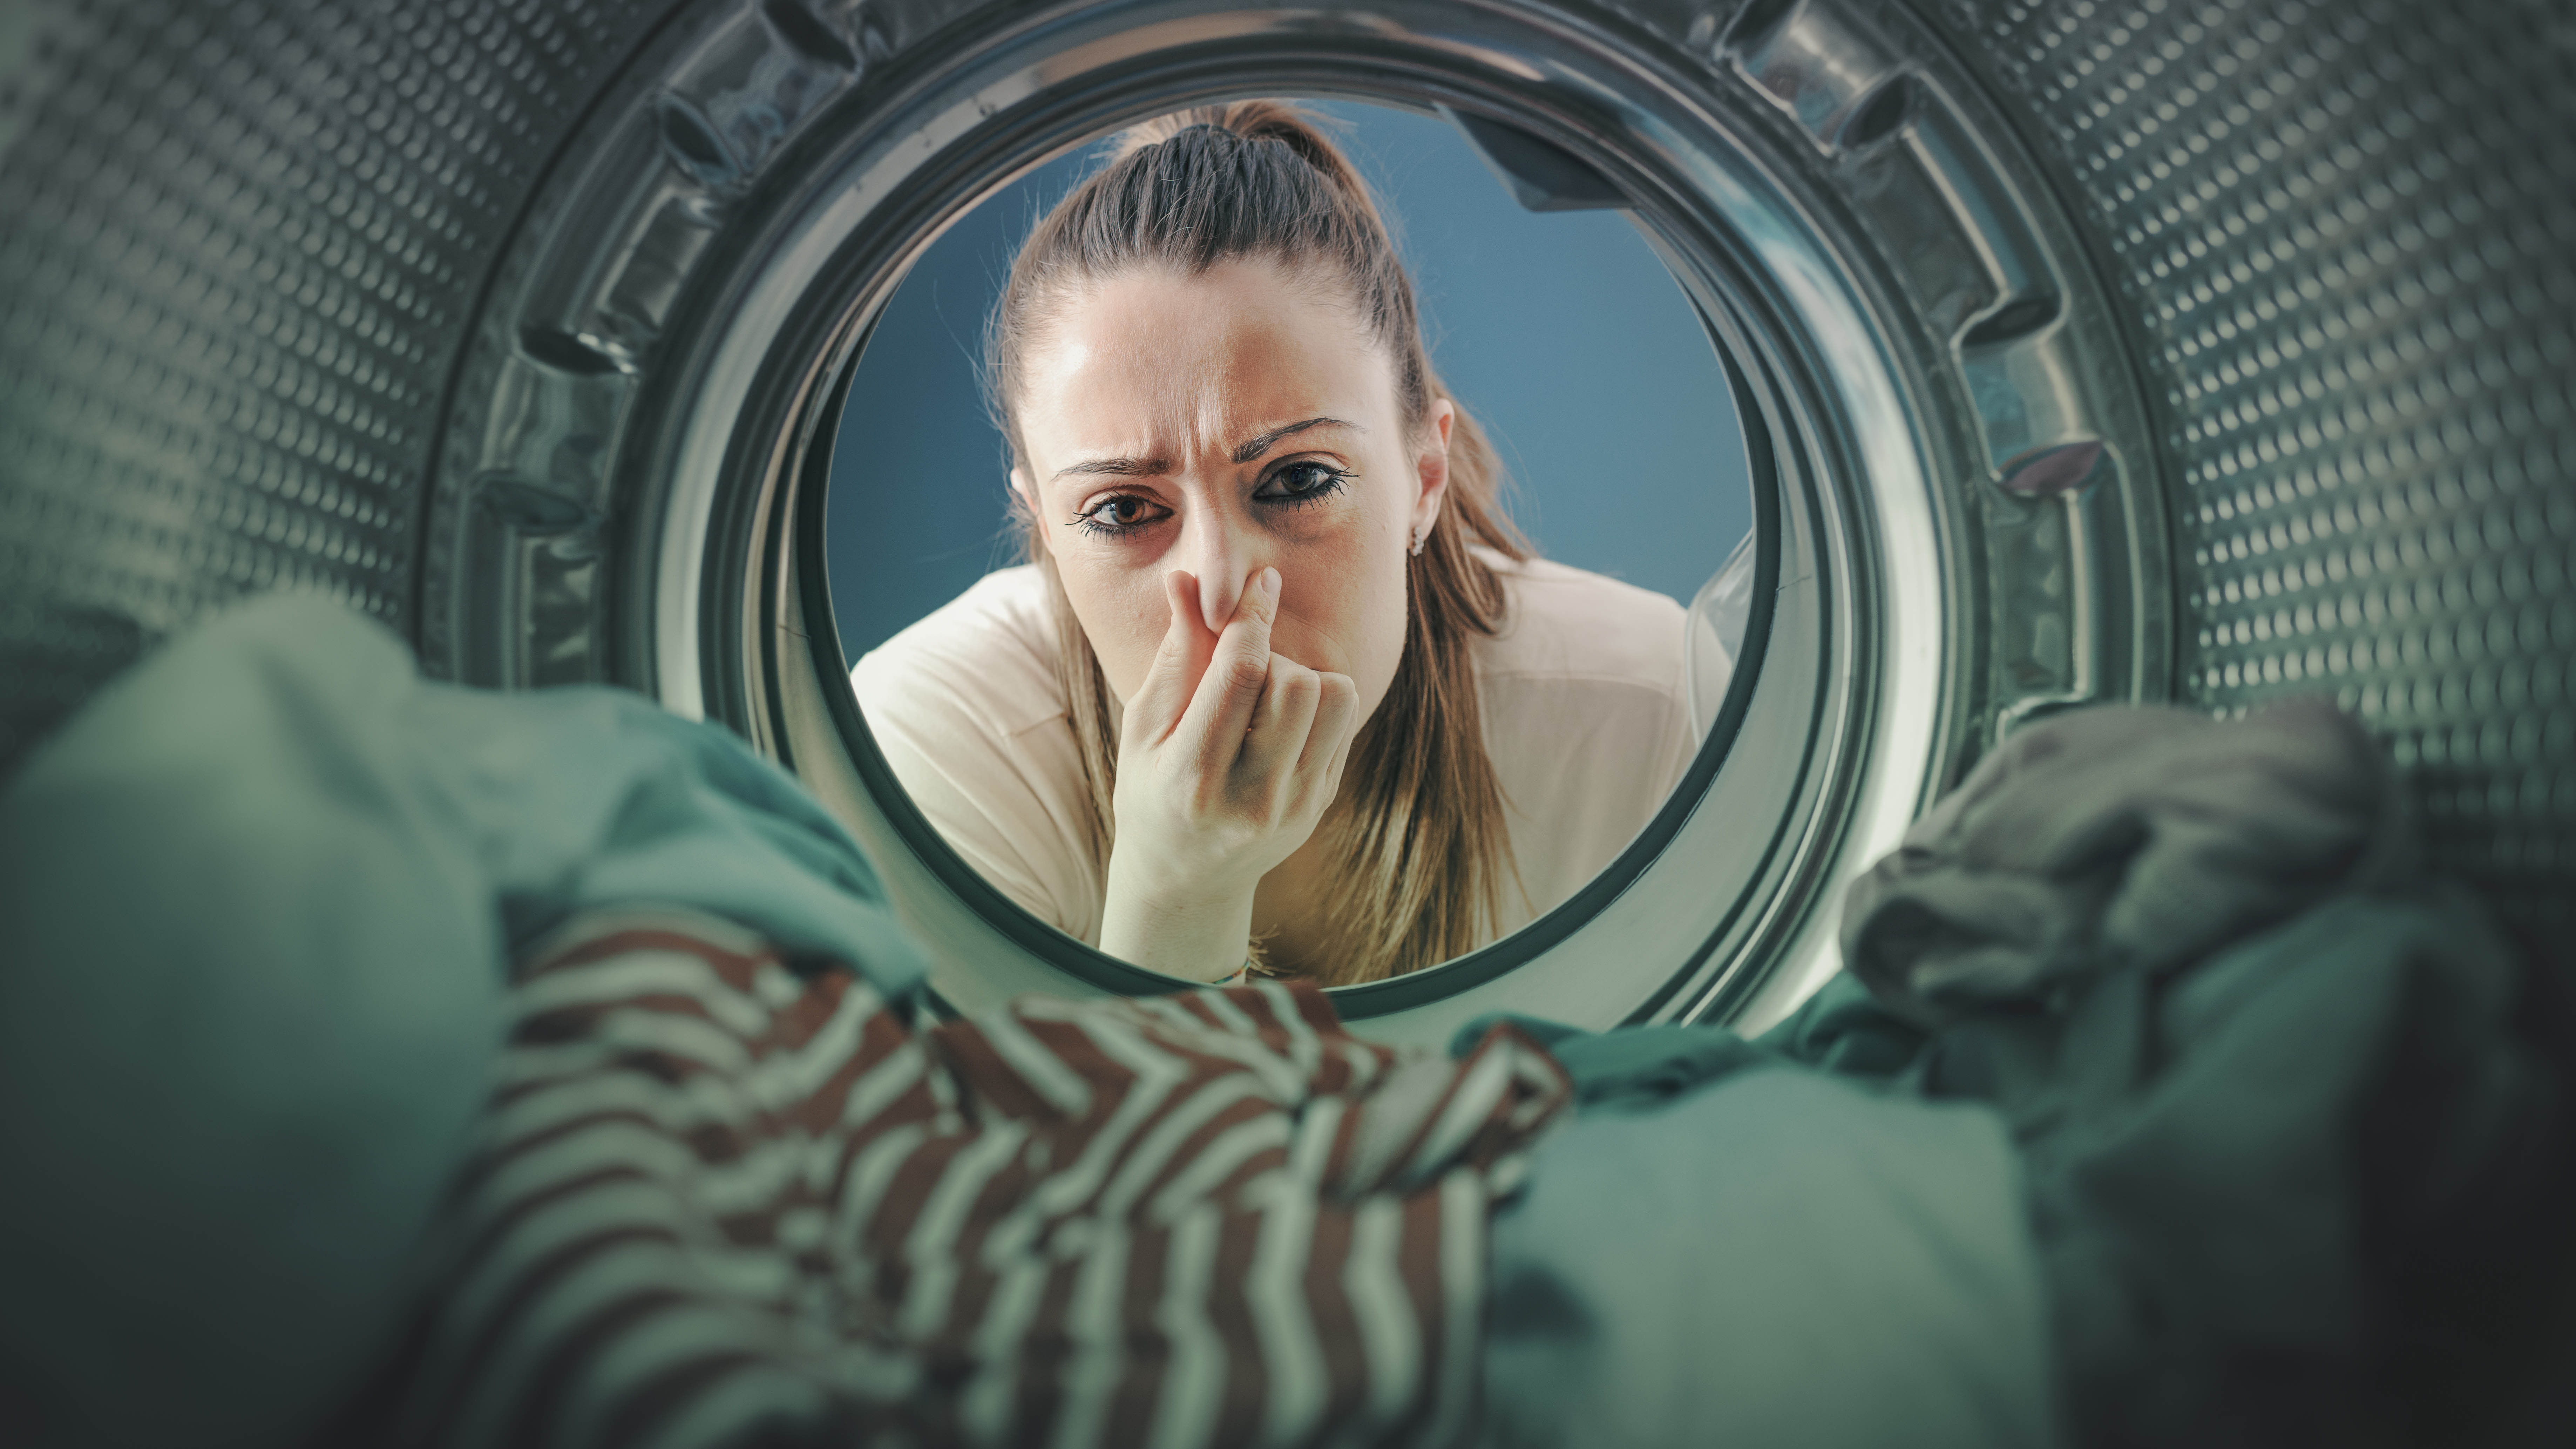 Женщина, зажав нос, смотрит на белье в стиральной машине.